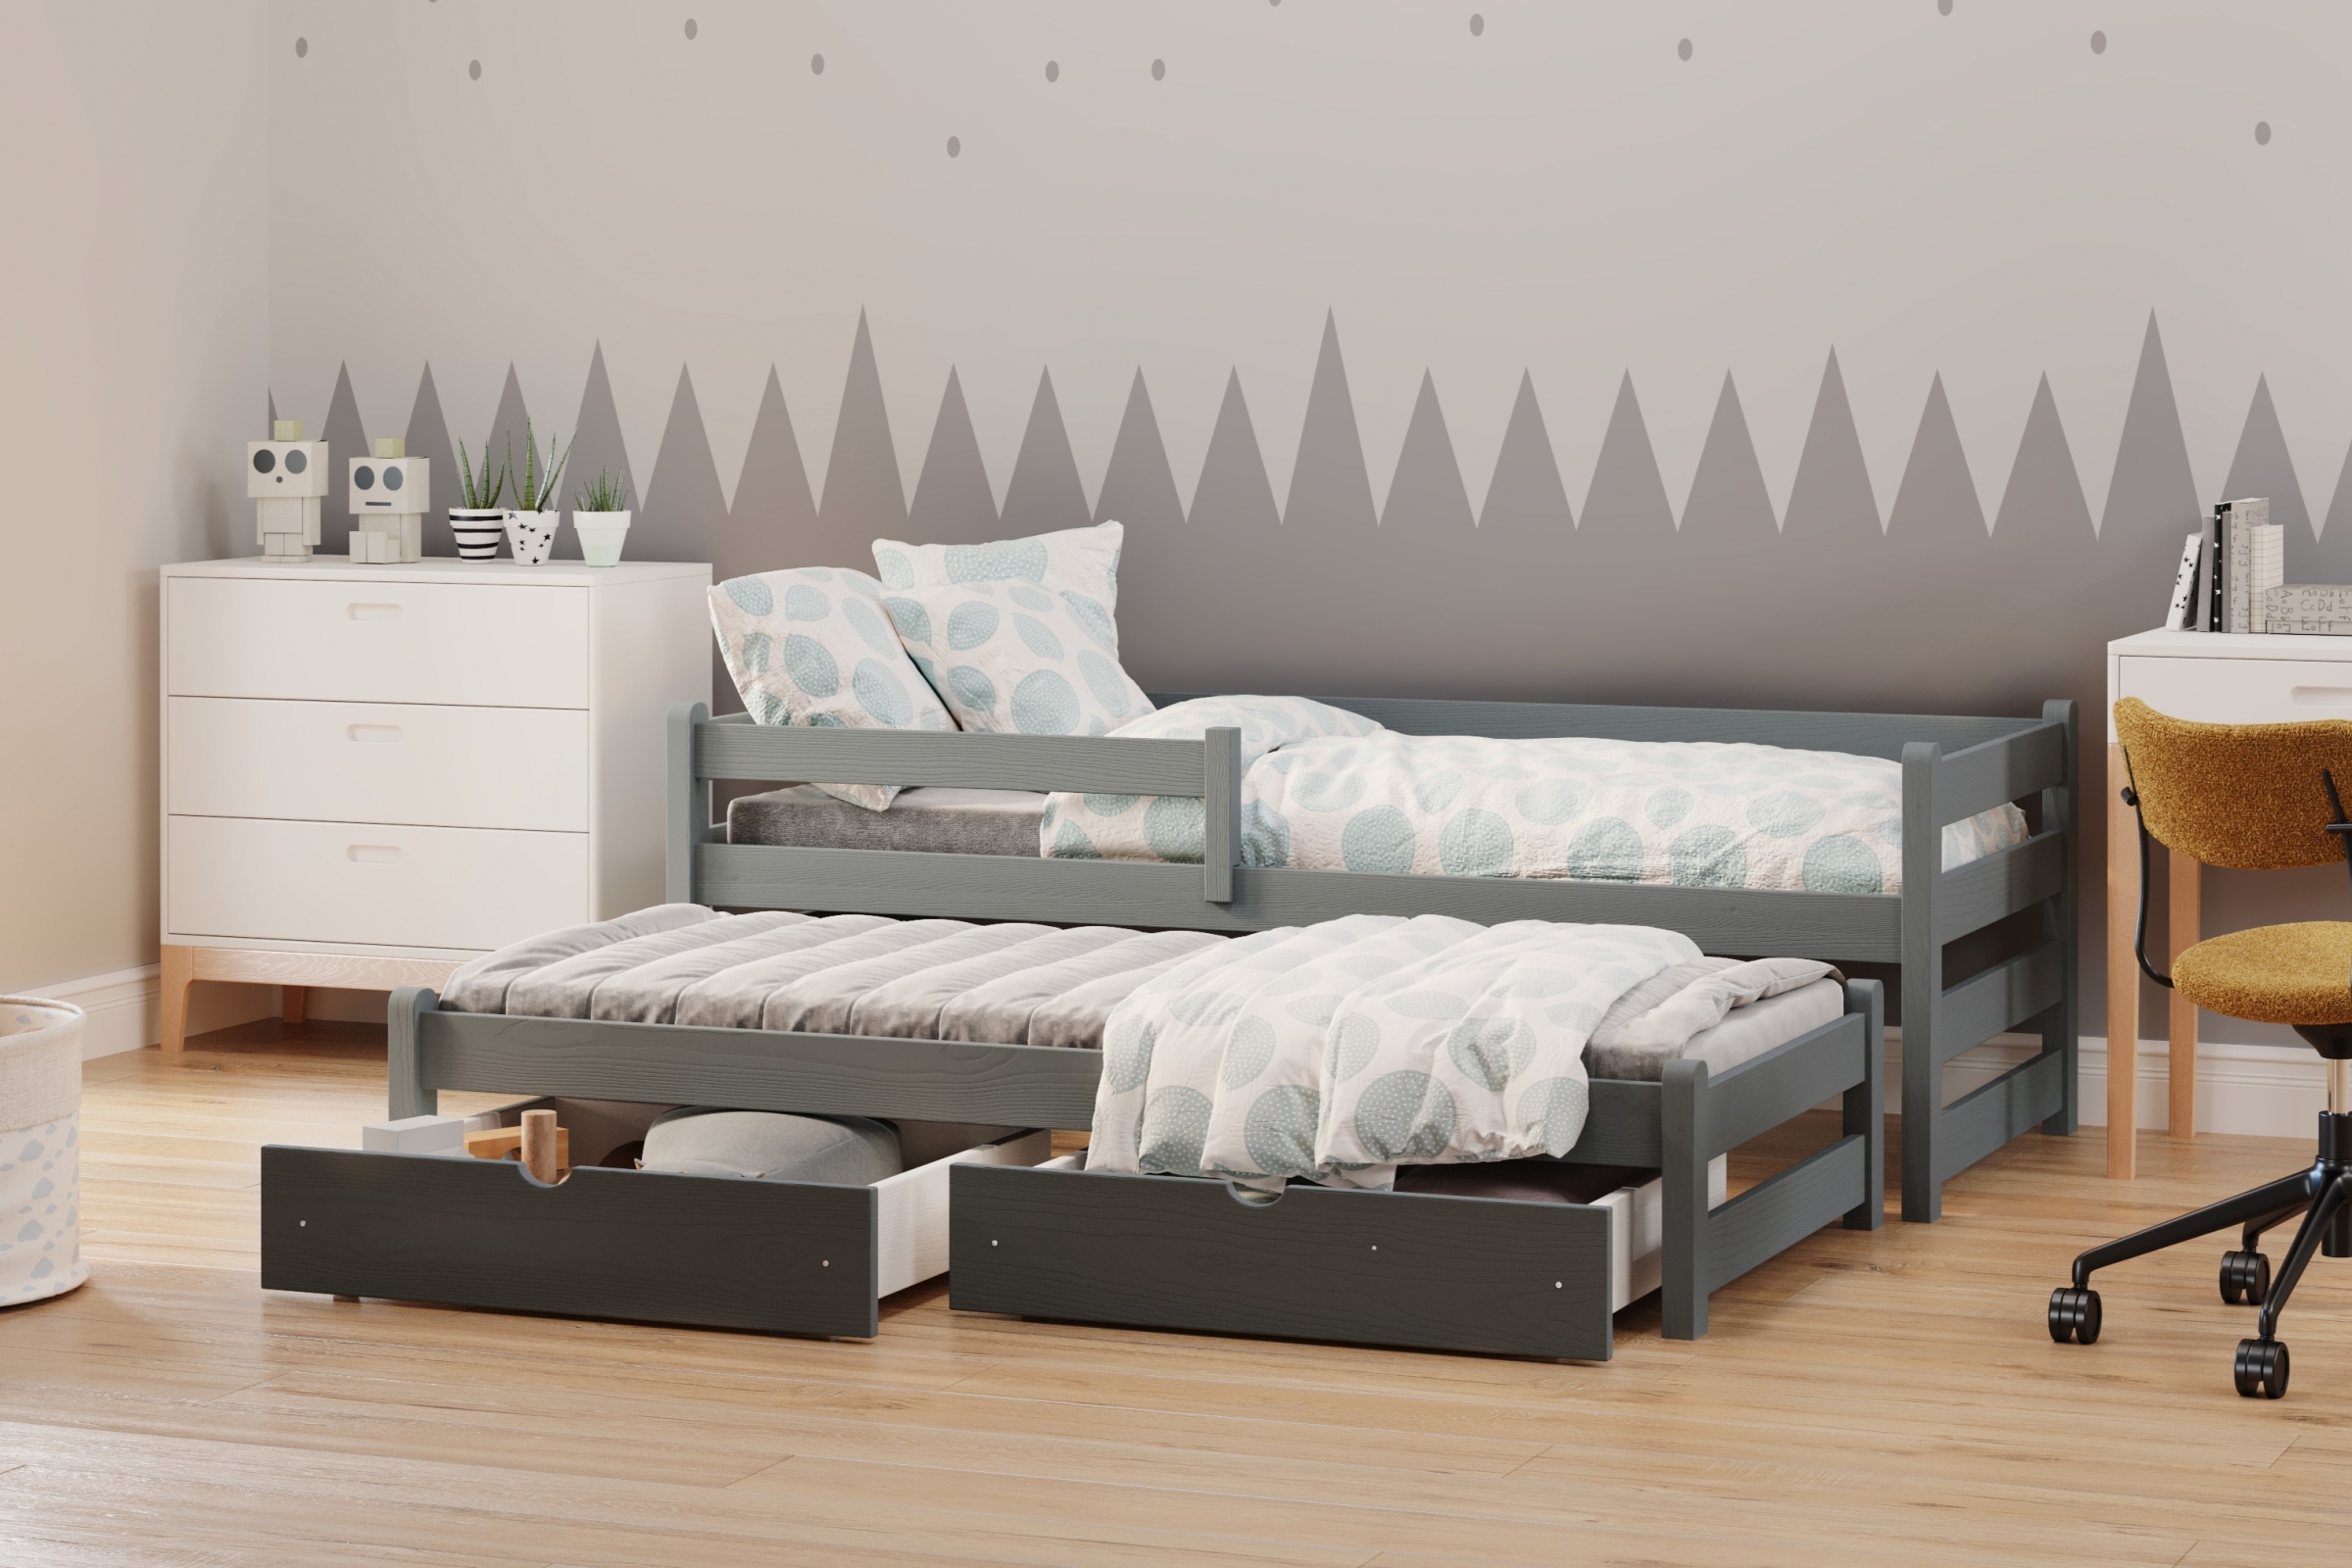 Detská posteľ prízemná s výsuvným lôžkom Alis DPV 001 - grafit, 80x180 Posteľ prízemná s výsuvným lôžkom Alis - Farba Grafit - vizualizácia